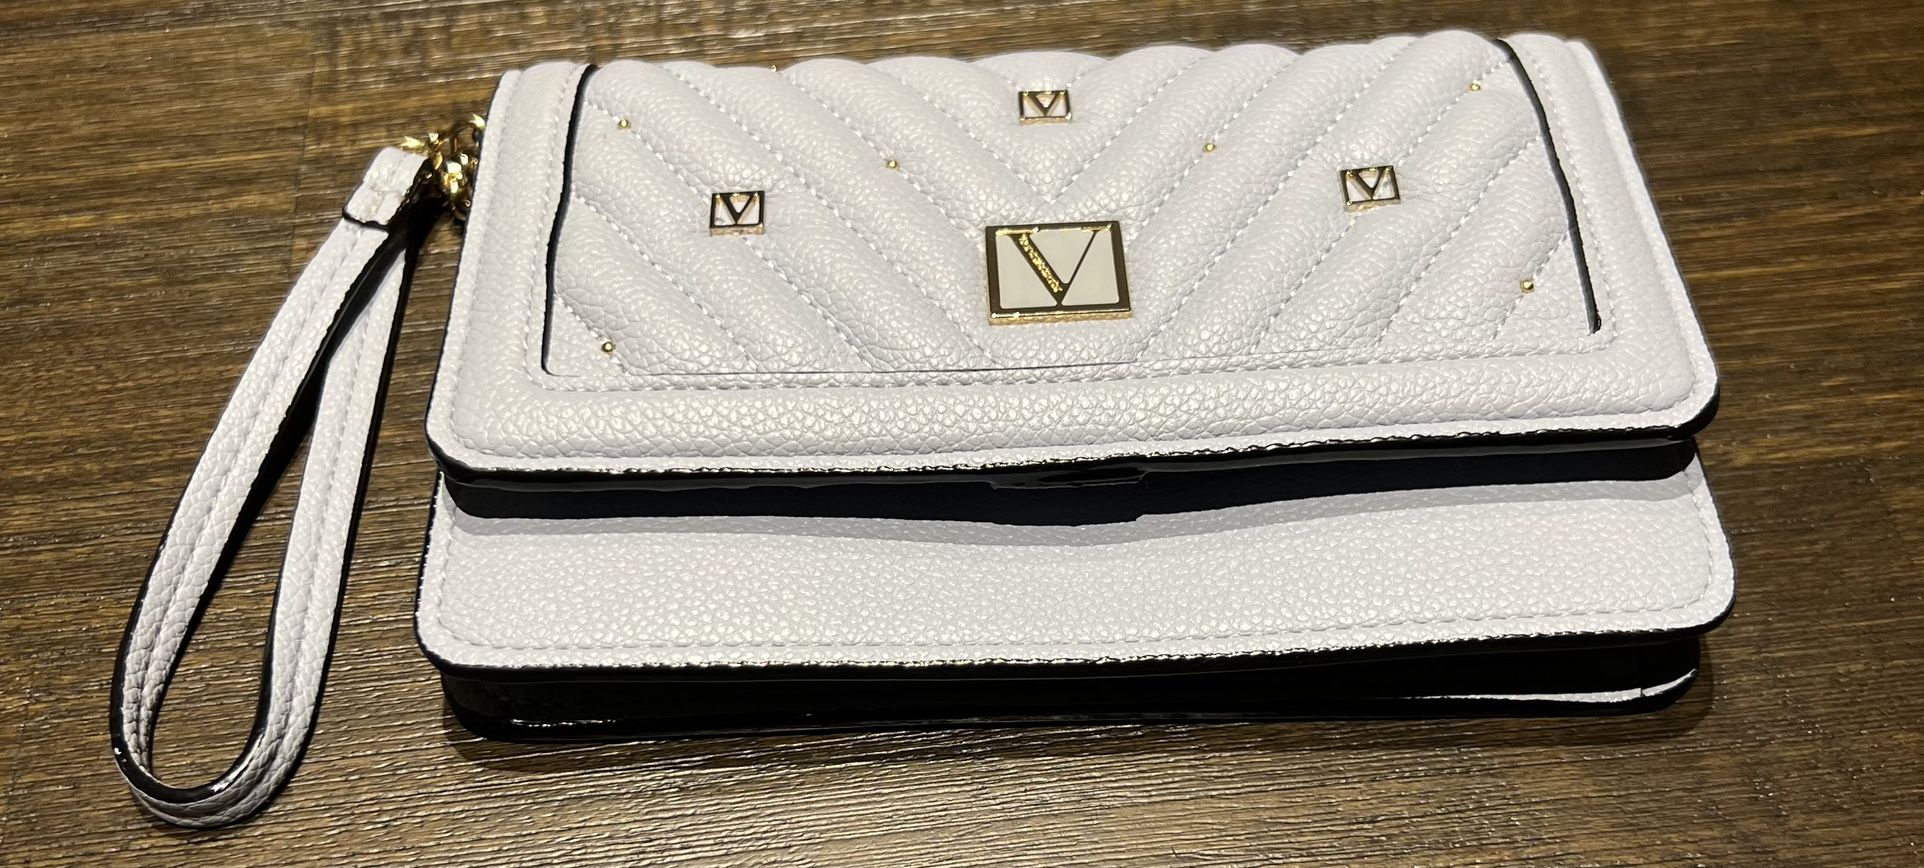 Victoria secret Phone Wristlet Wallet